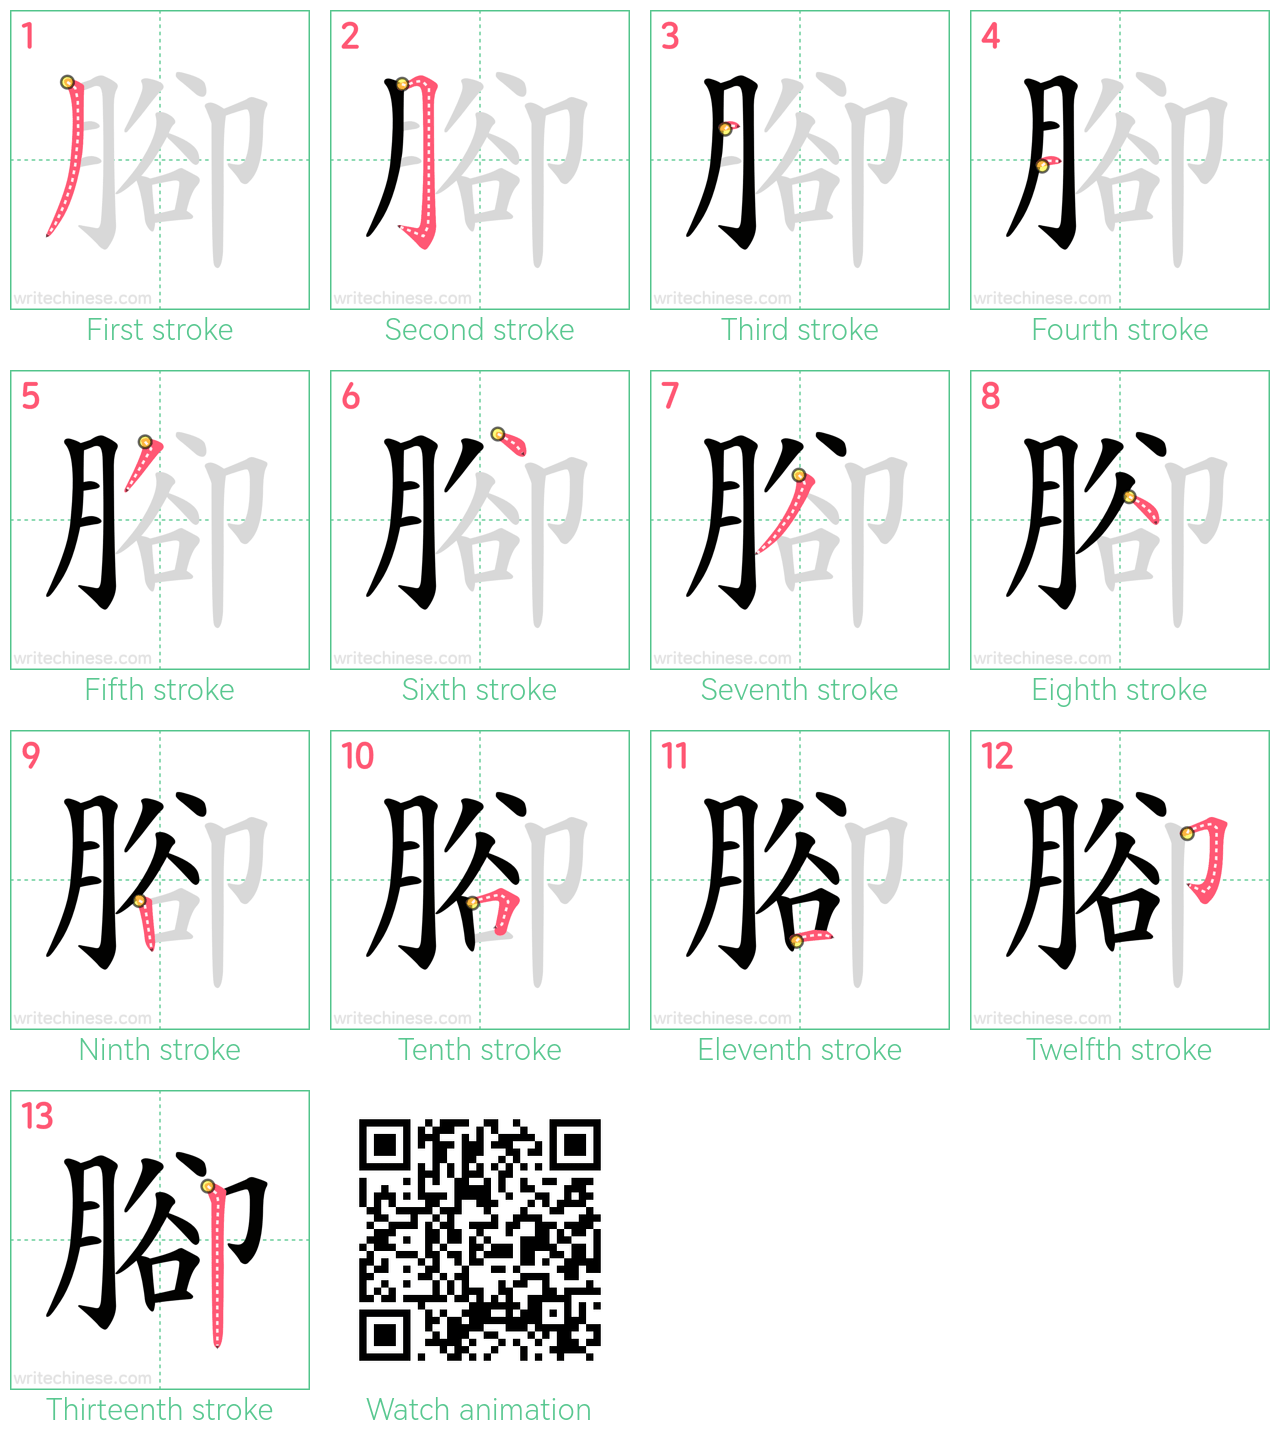 腳 step-by-step stroke order diagrams